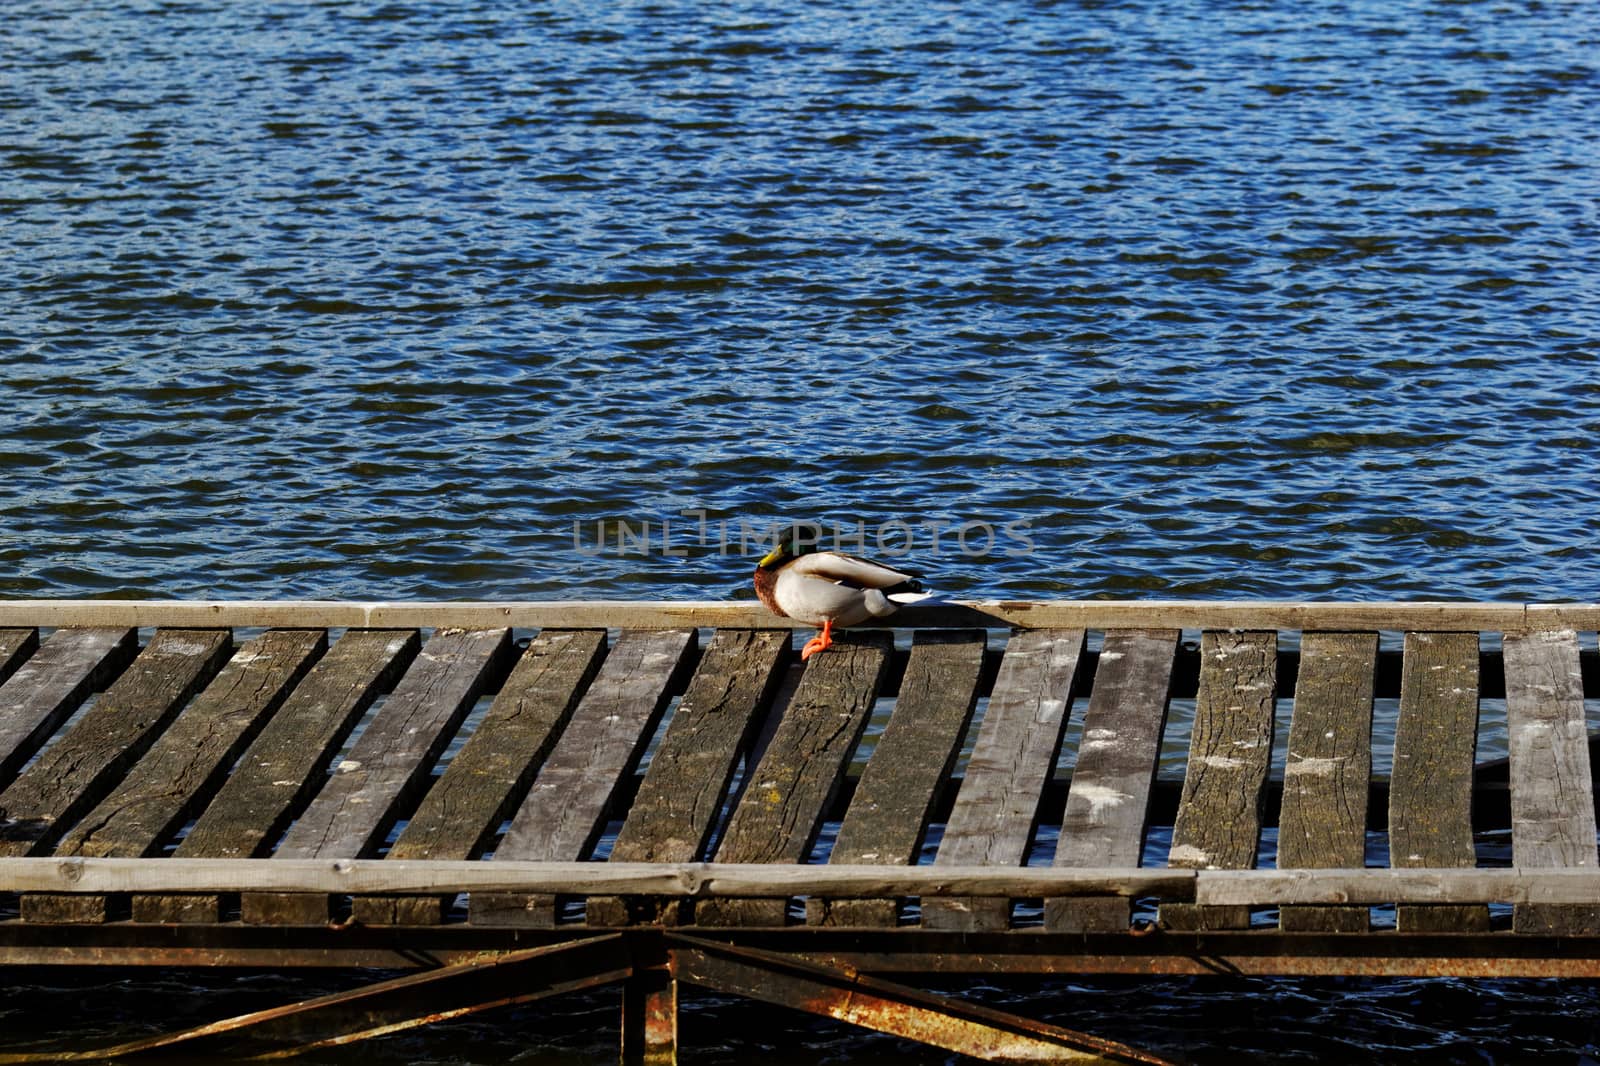 duck in dock on the lake by NagyDodo